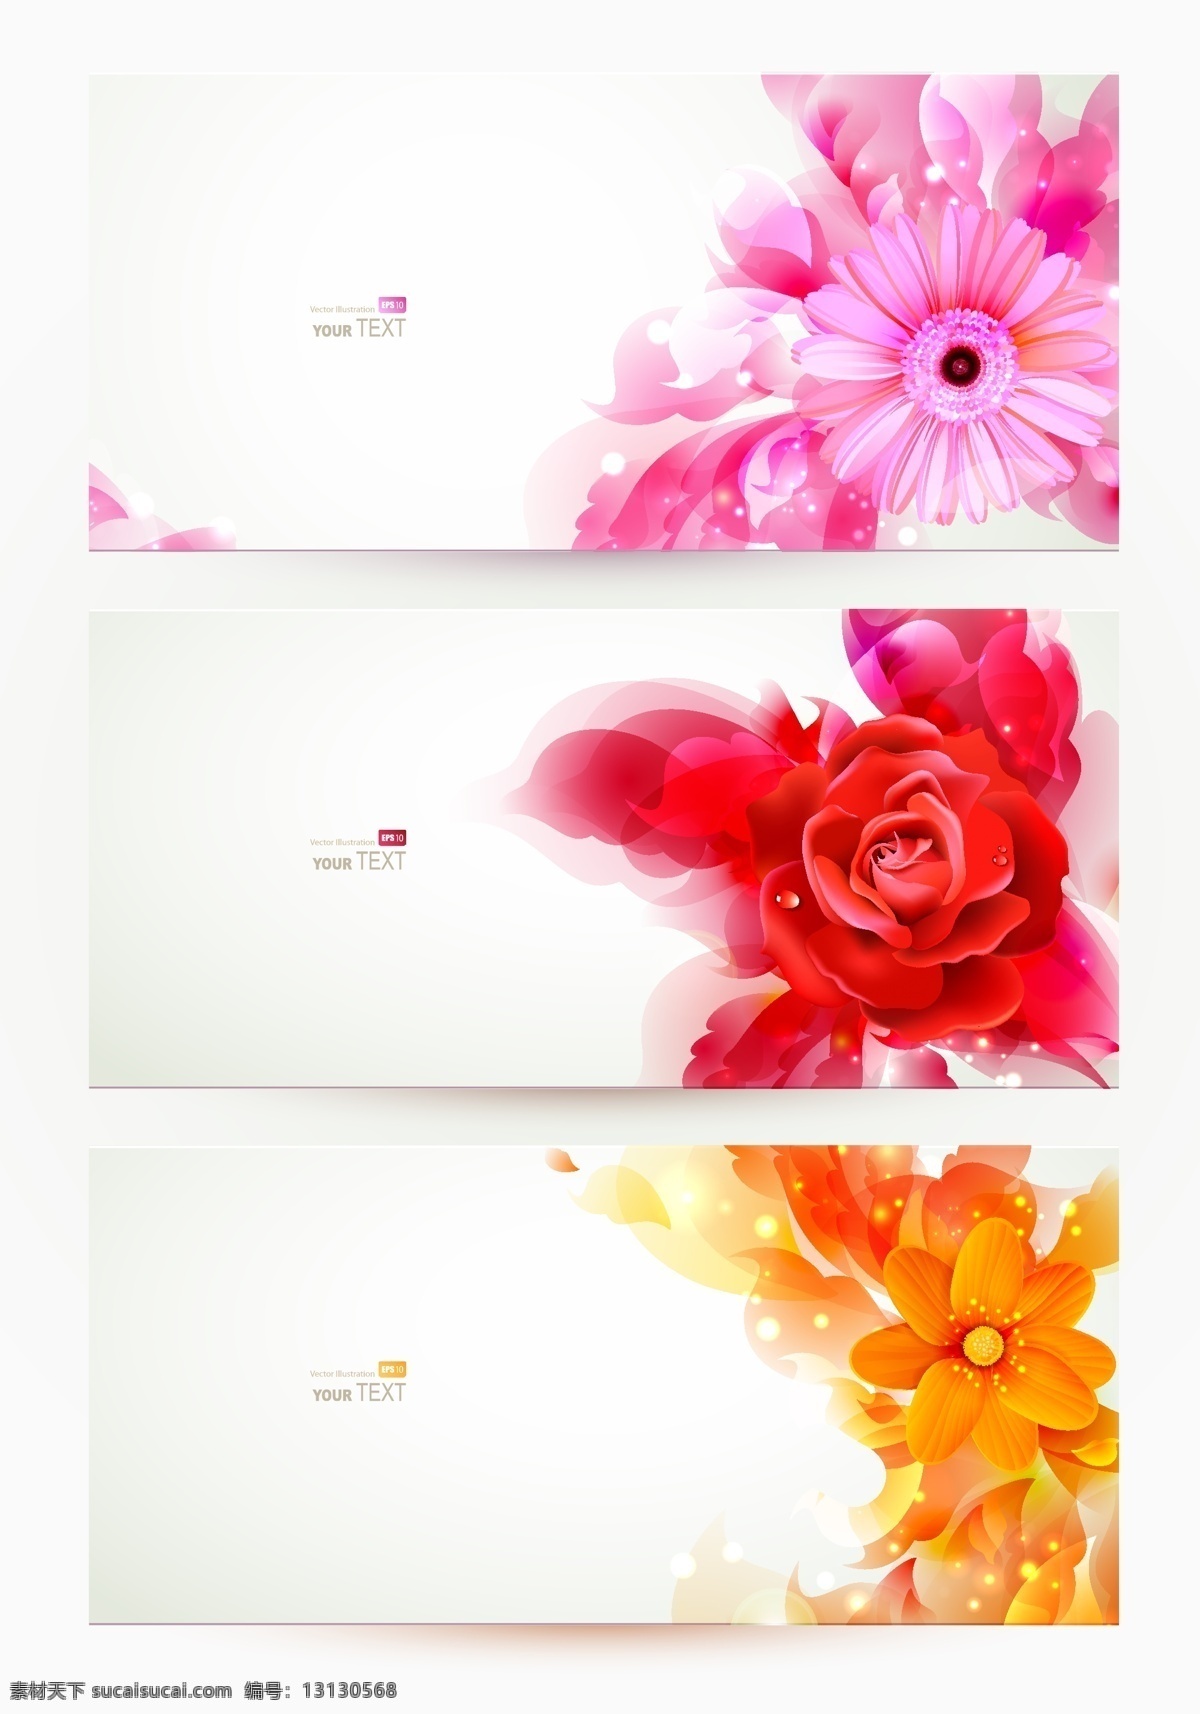 艳丽 花卉 banner 璀璨 横幅 模板 设计稿 素材元素 炫彩 源文件 矢量图